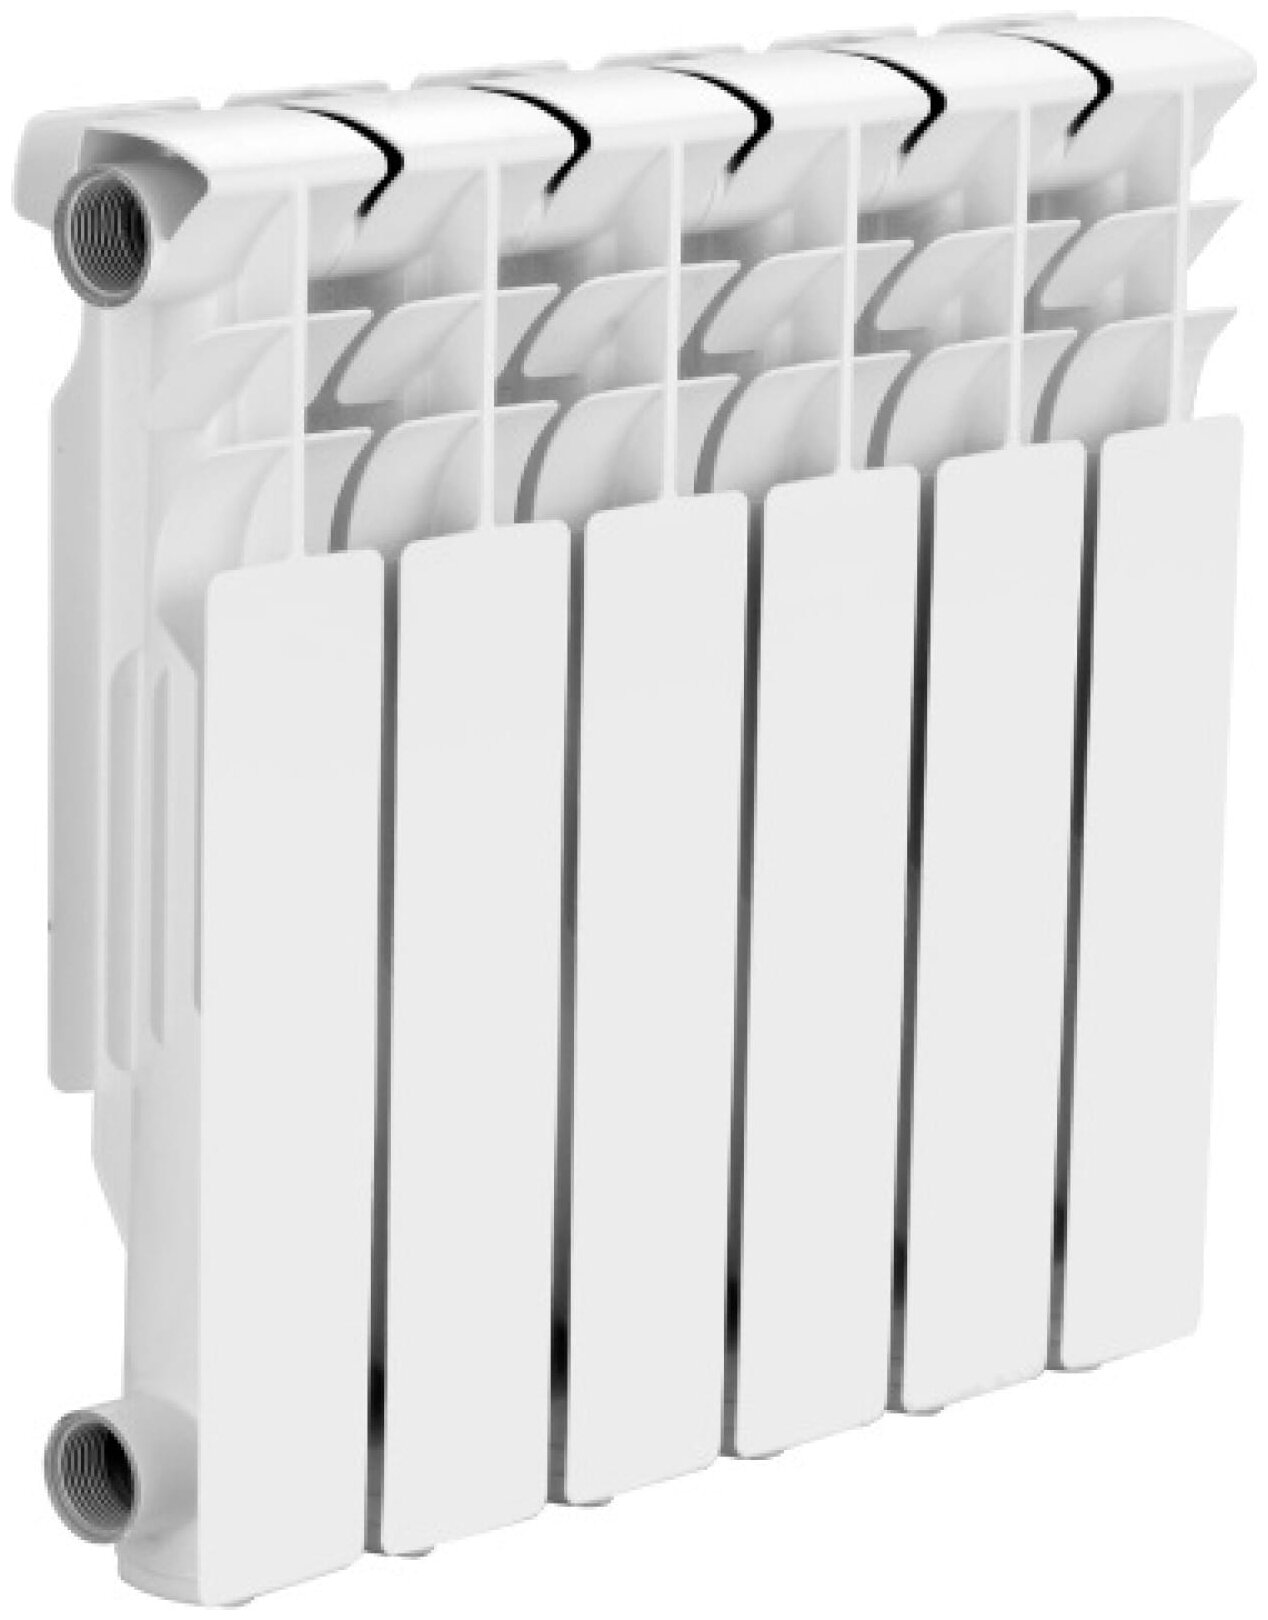 Радиатор секционный МЕТАЛЛСЕРВИС THERMA Q2 350/80, кол-во секций: 6, 5 м2, 465 мм.алюминиевый